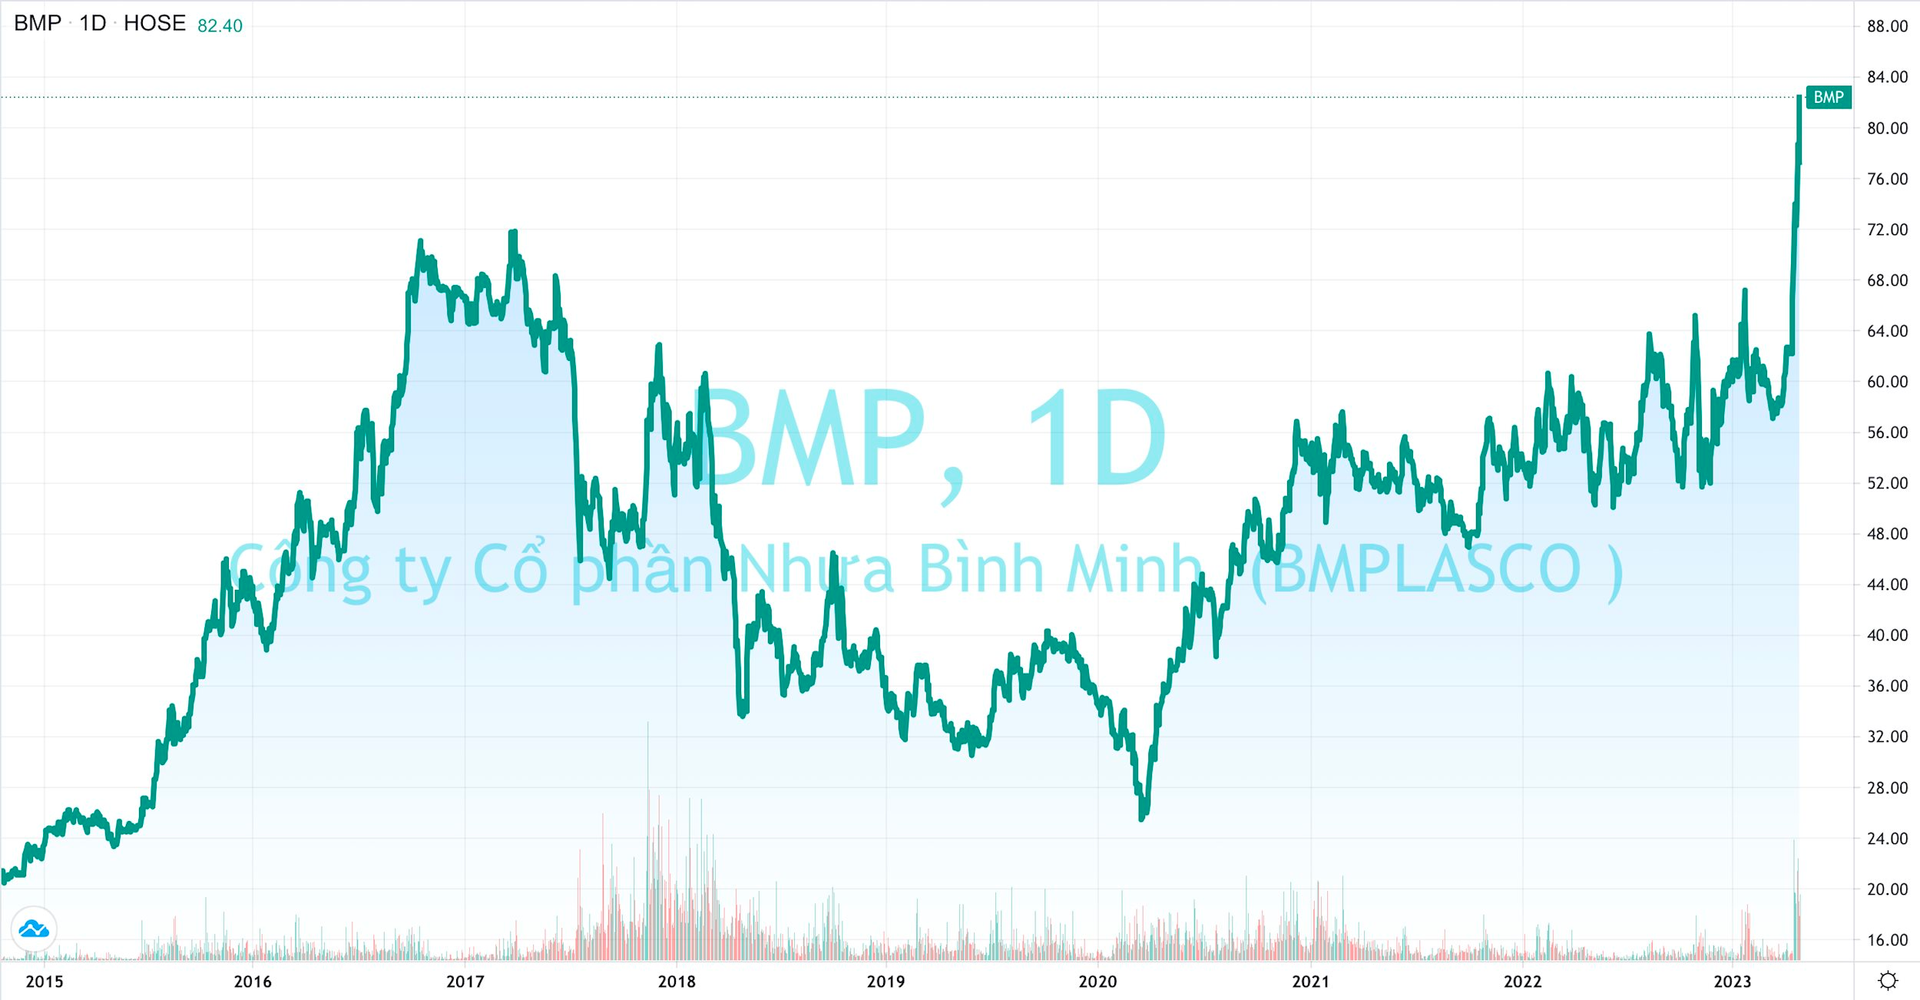 Nhựa Bình Minh sắp chia cổ tức 53%, SCIC thông báo thoái vốn, cổ phiếu BMP tăng giá 